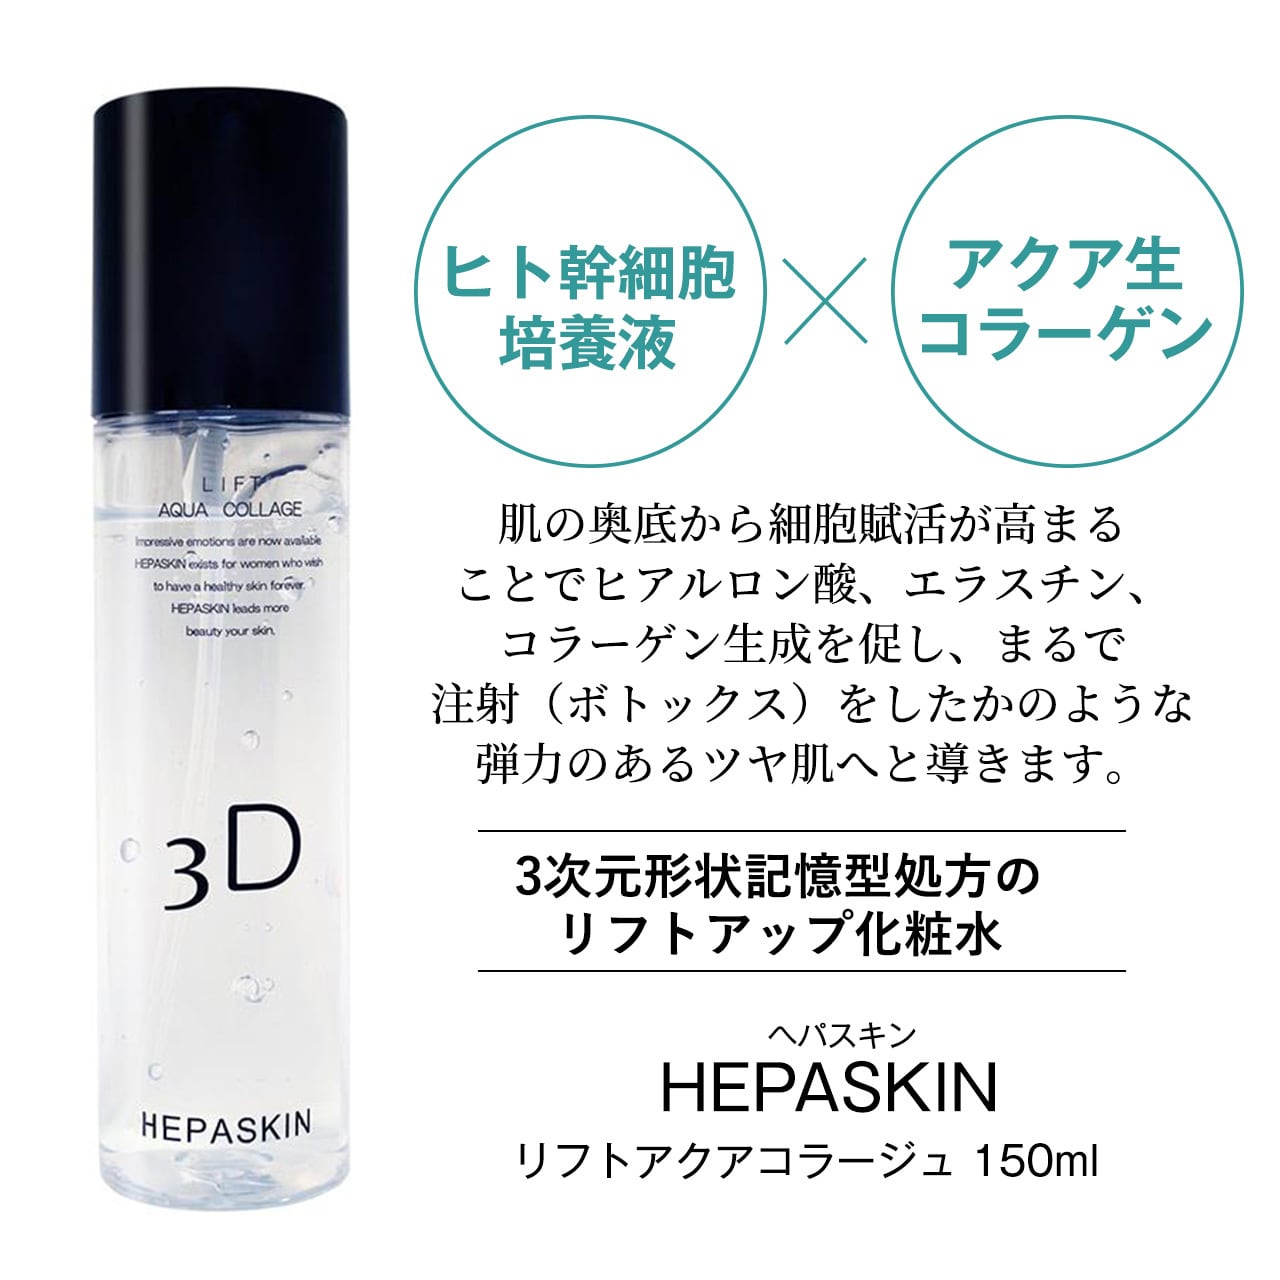 【新品】ヘパスキン リフトアクアコラージュ化粧水 150ml